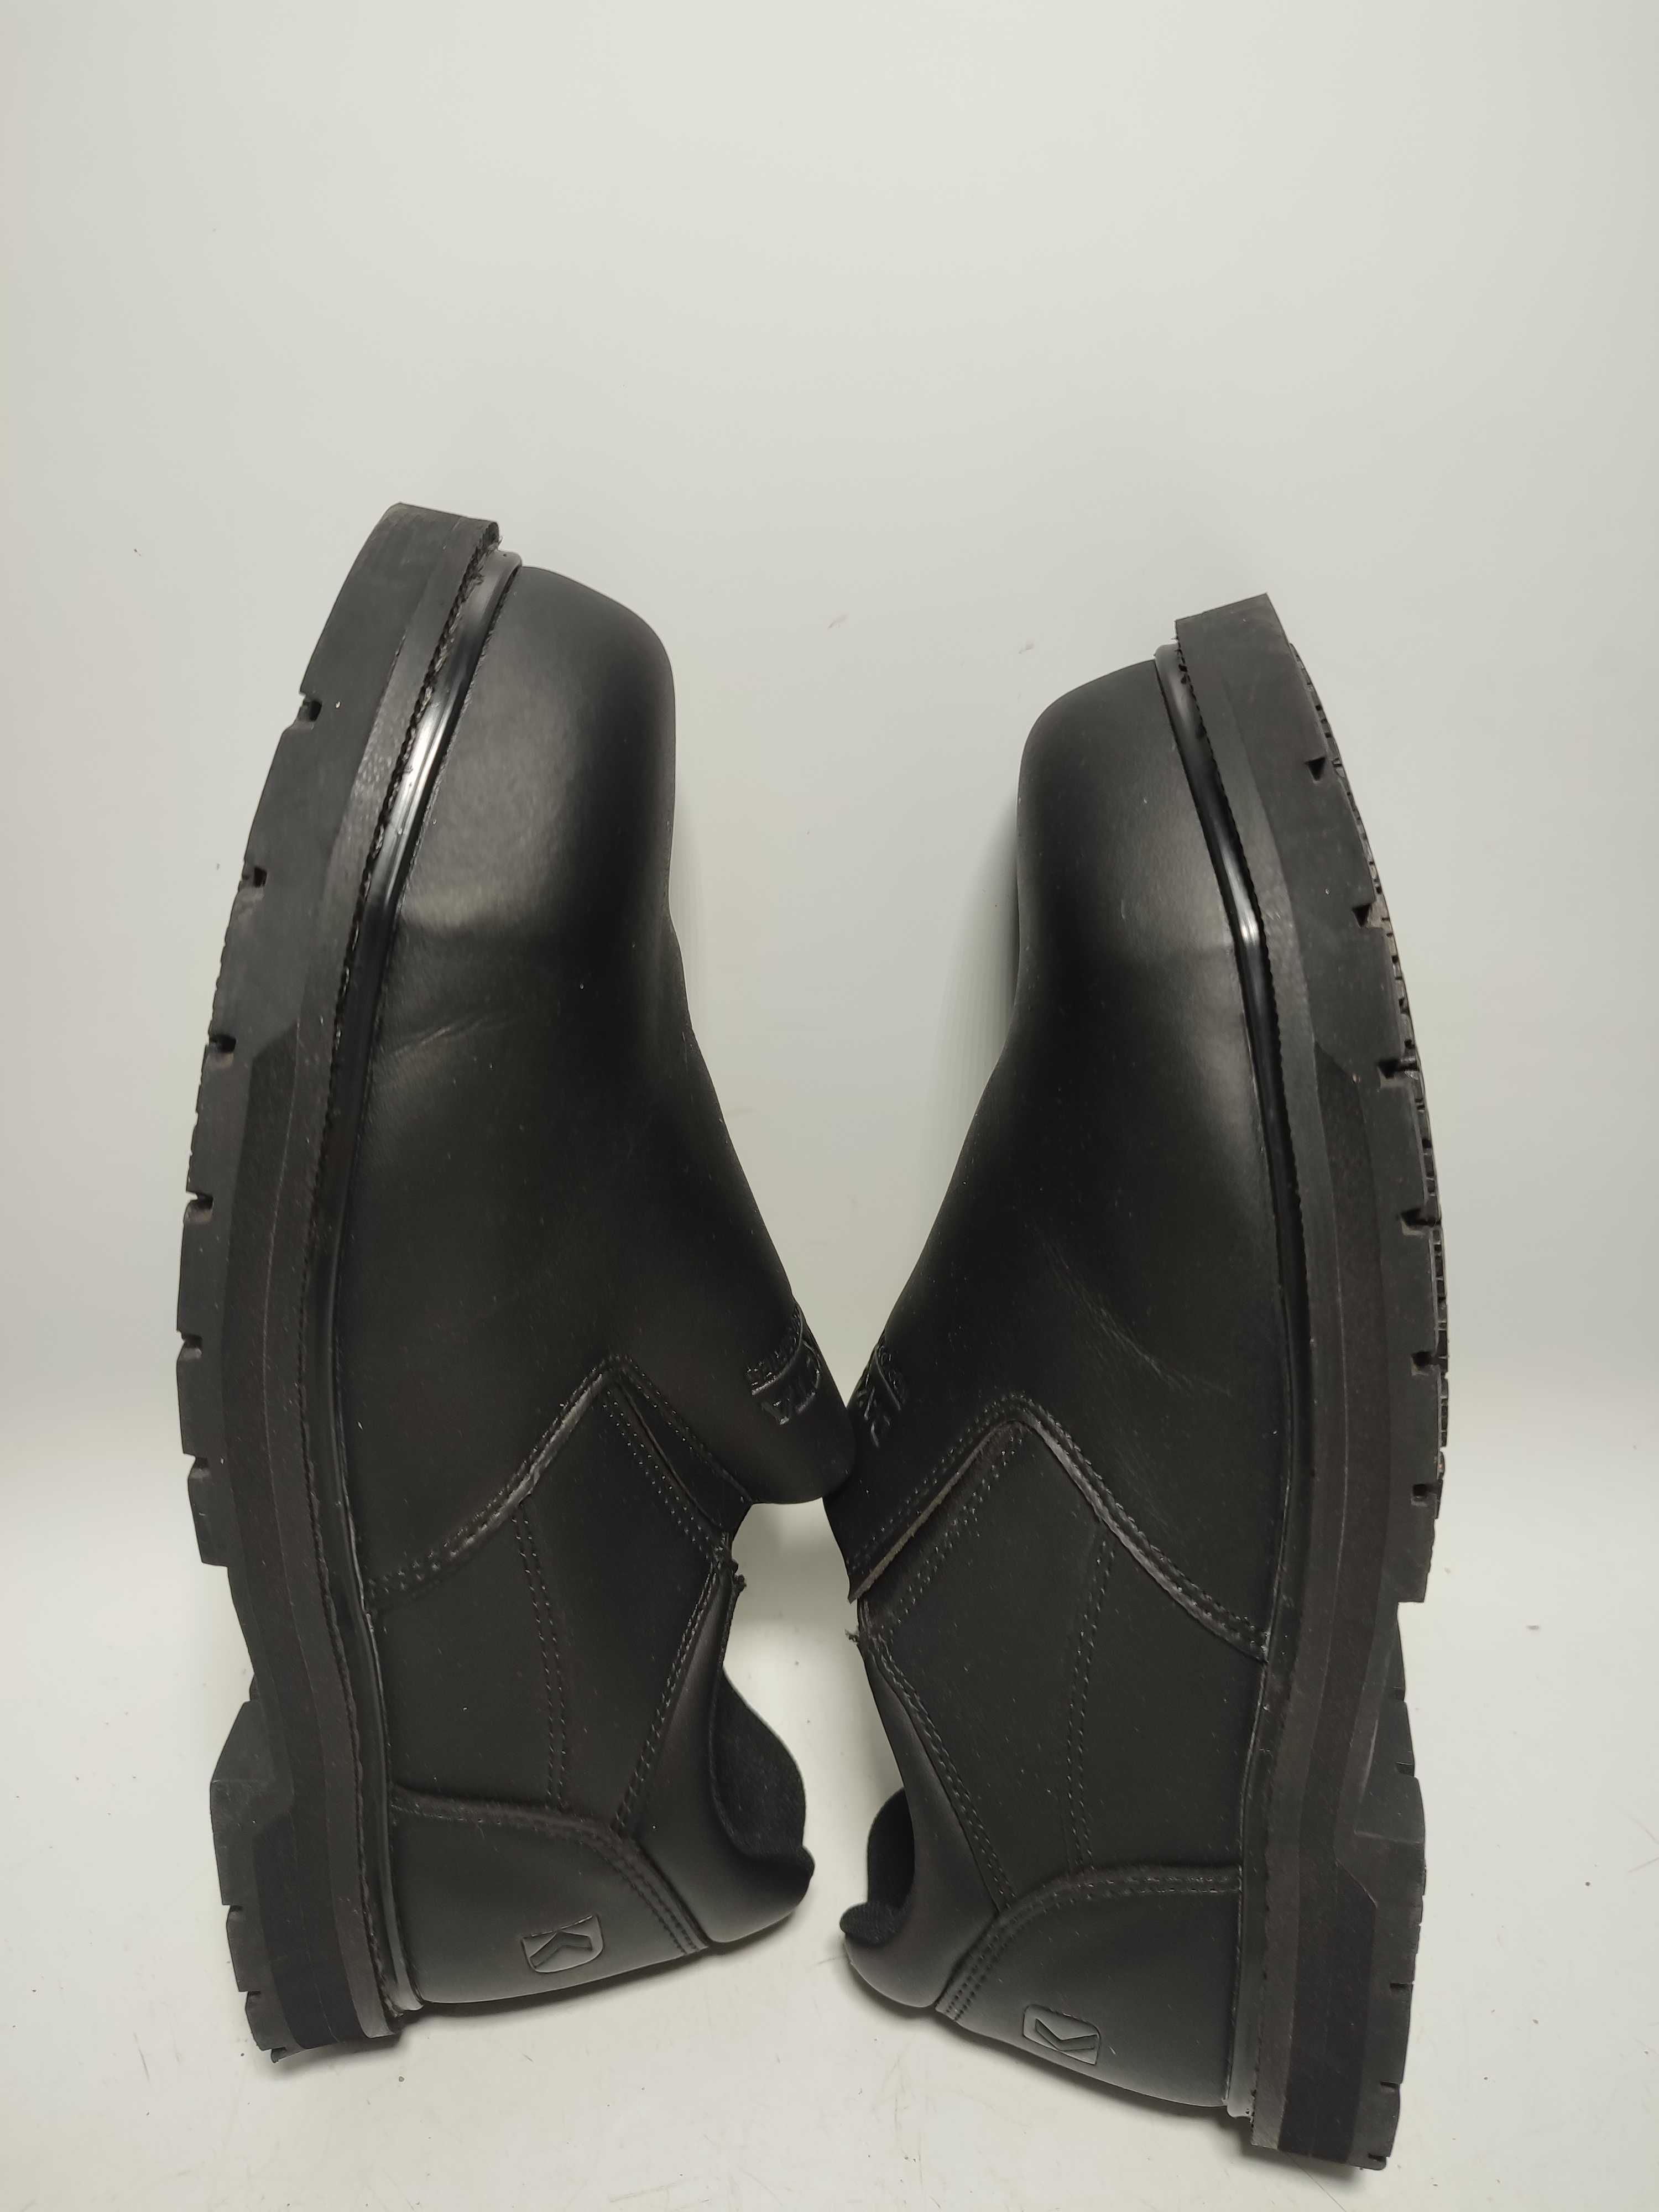 Buty robocze półbuty wsuwane DAKOTA S1 rozmiar 42 NOWE